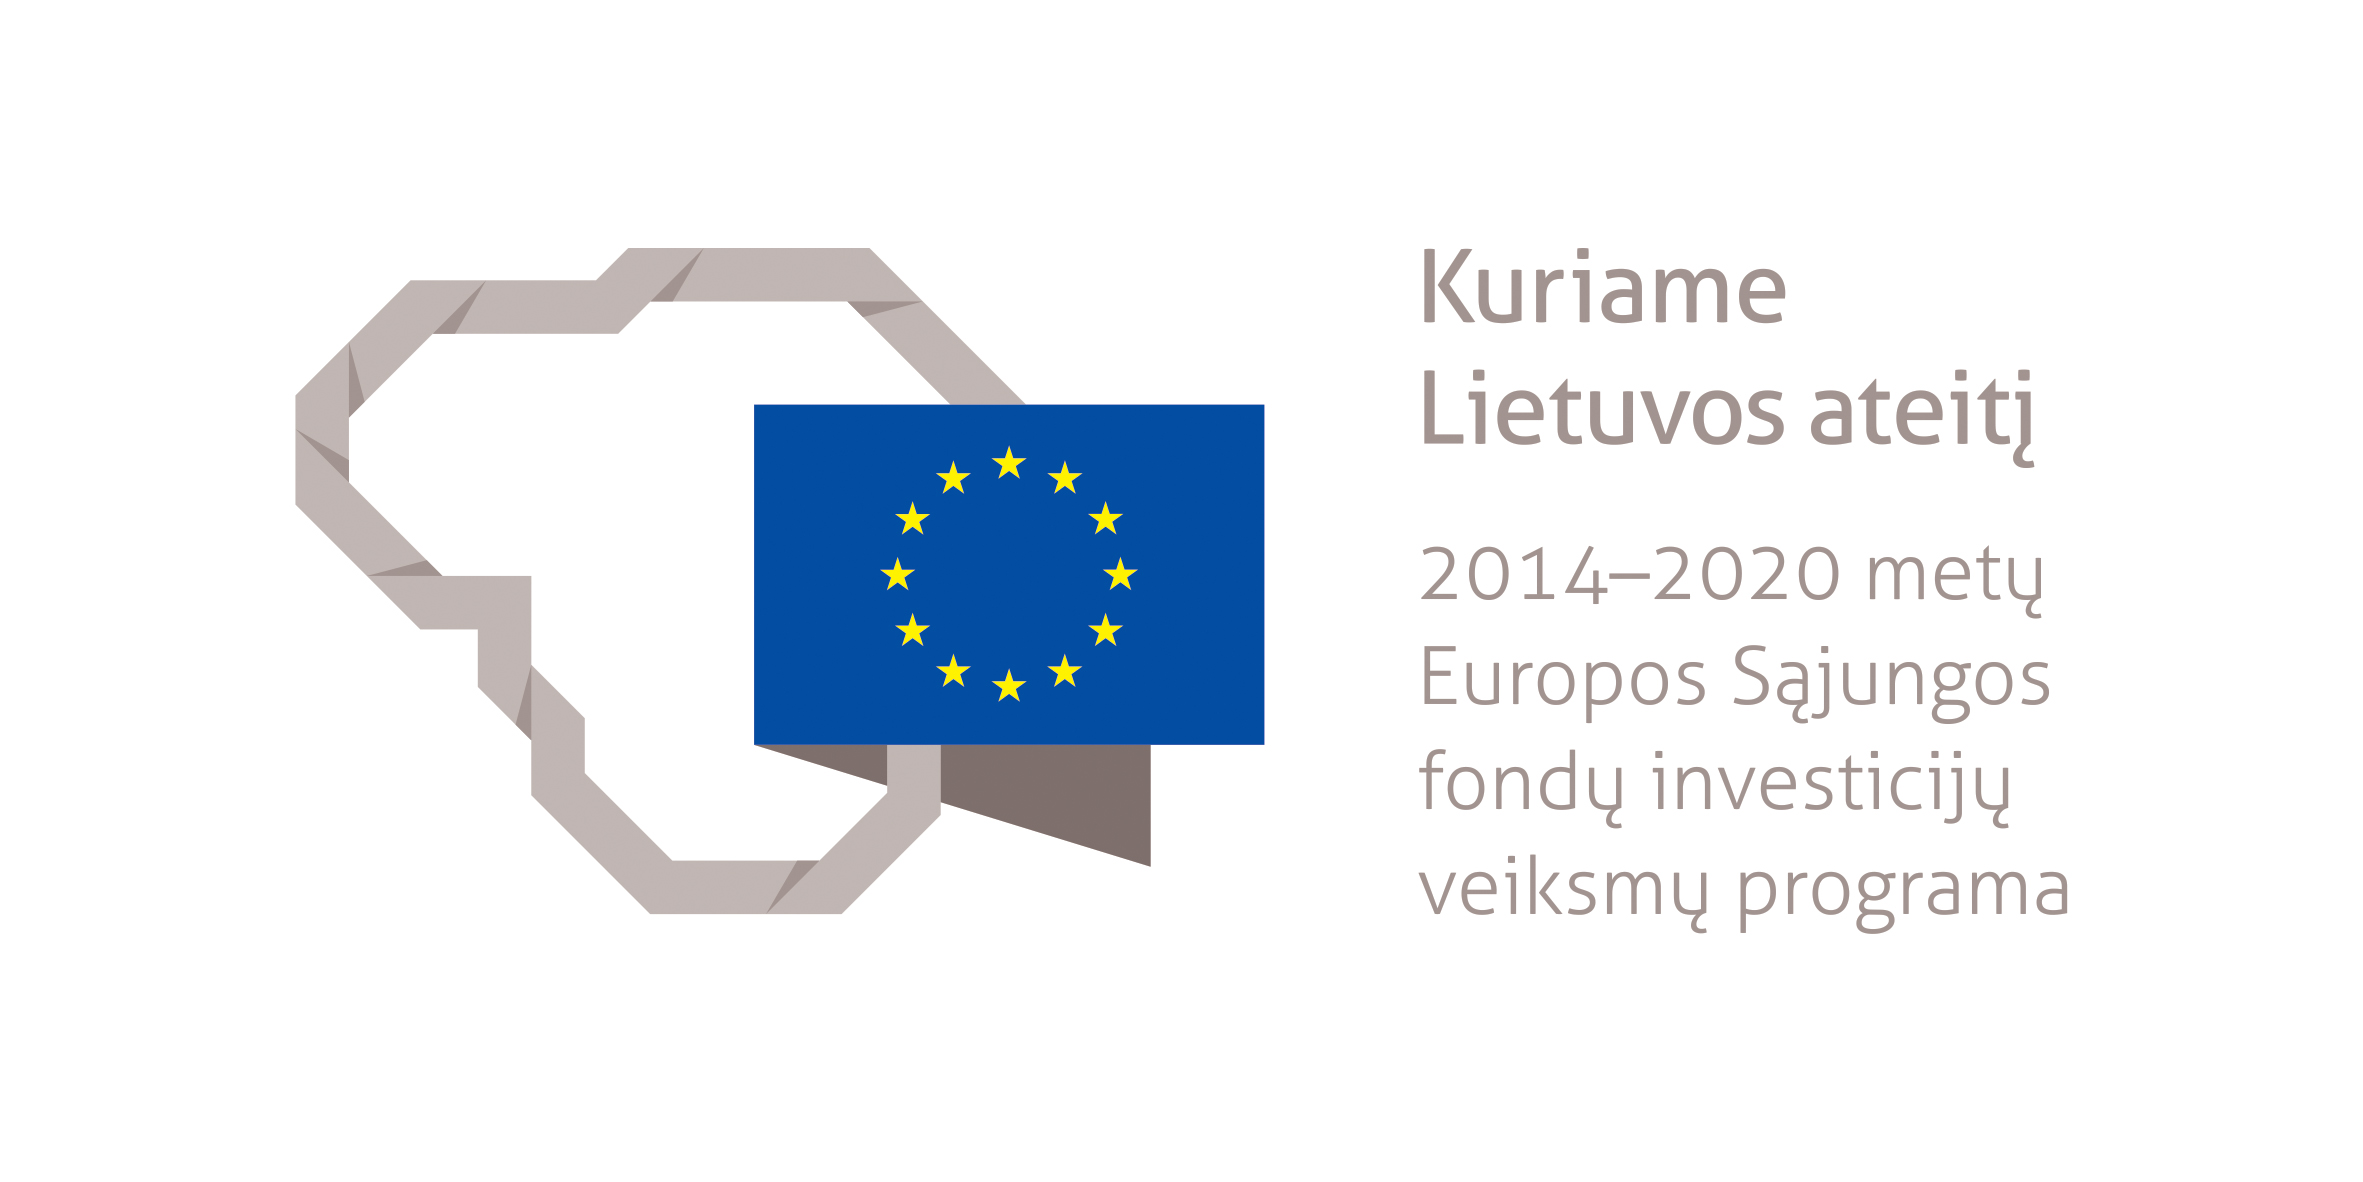 Projektas bendrai finansuotas iš Europos socialinio fondo lėšų (projekto nr. 09.3.3-LMT-K-712-25-0160) pagal dotacijos sutartį su Lietuvos mokslo taryba (LMTLT)